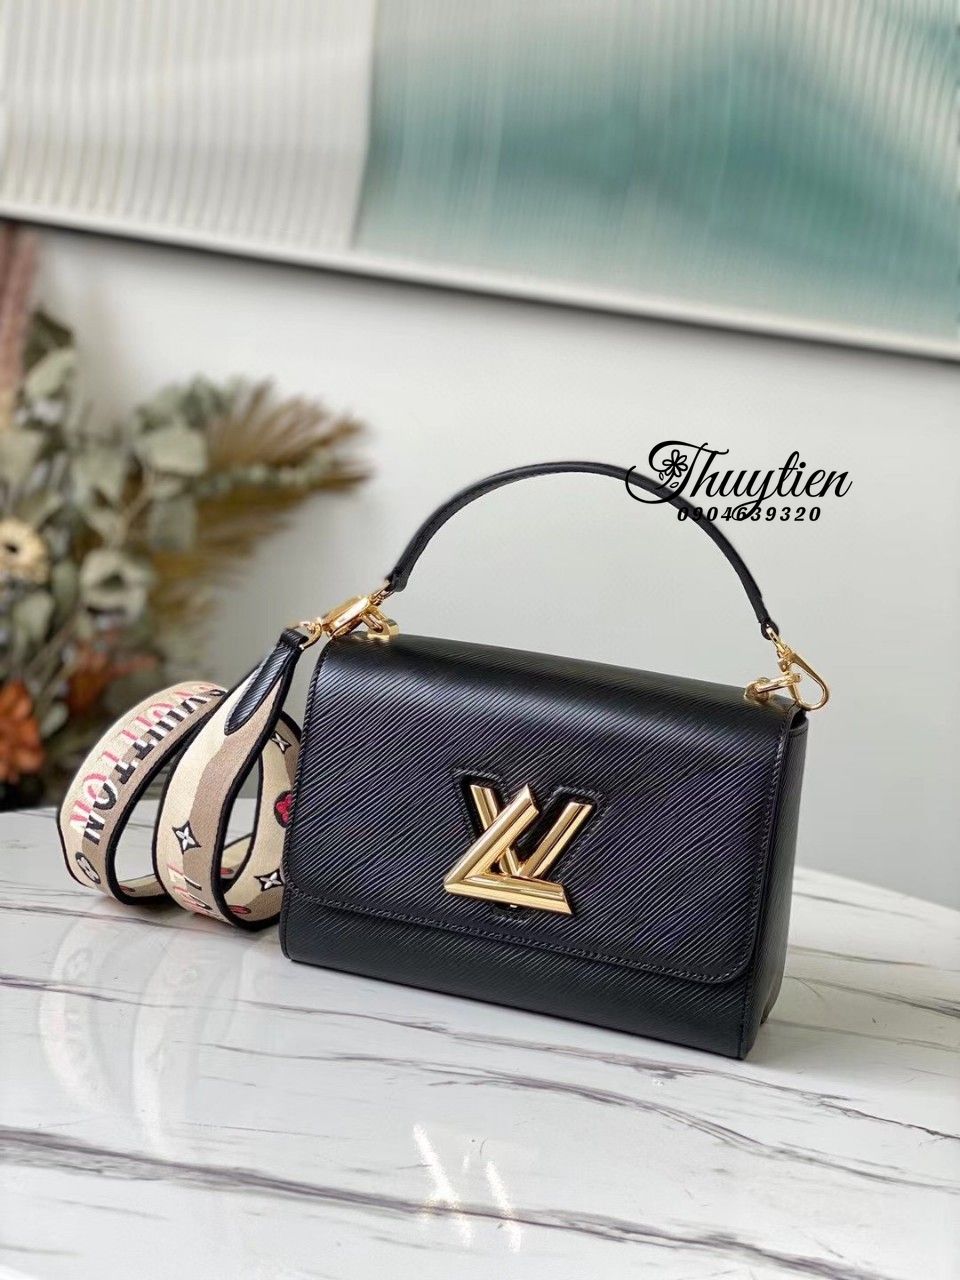 Túi xách Louis Vuitton Epi leather Twist Mini Handbags siêu cấp màu đen  size 23 cm  M57050  Túi Xách Nữ Túi Xách Đẹp Túi Xách Giày Dép Nữ   Bước Thời Trang